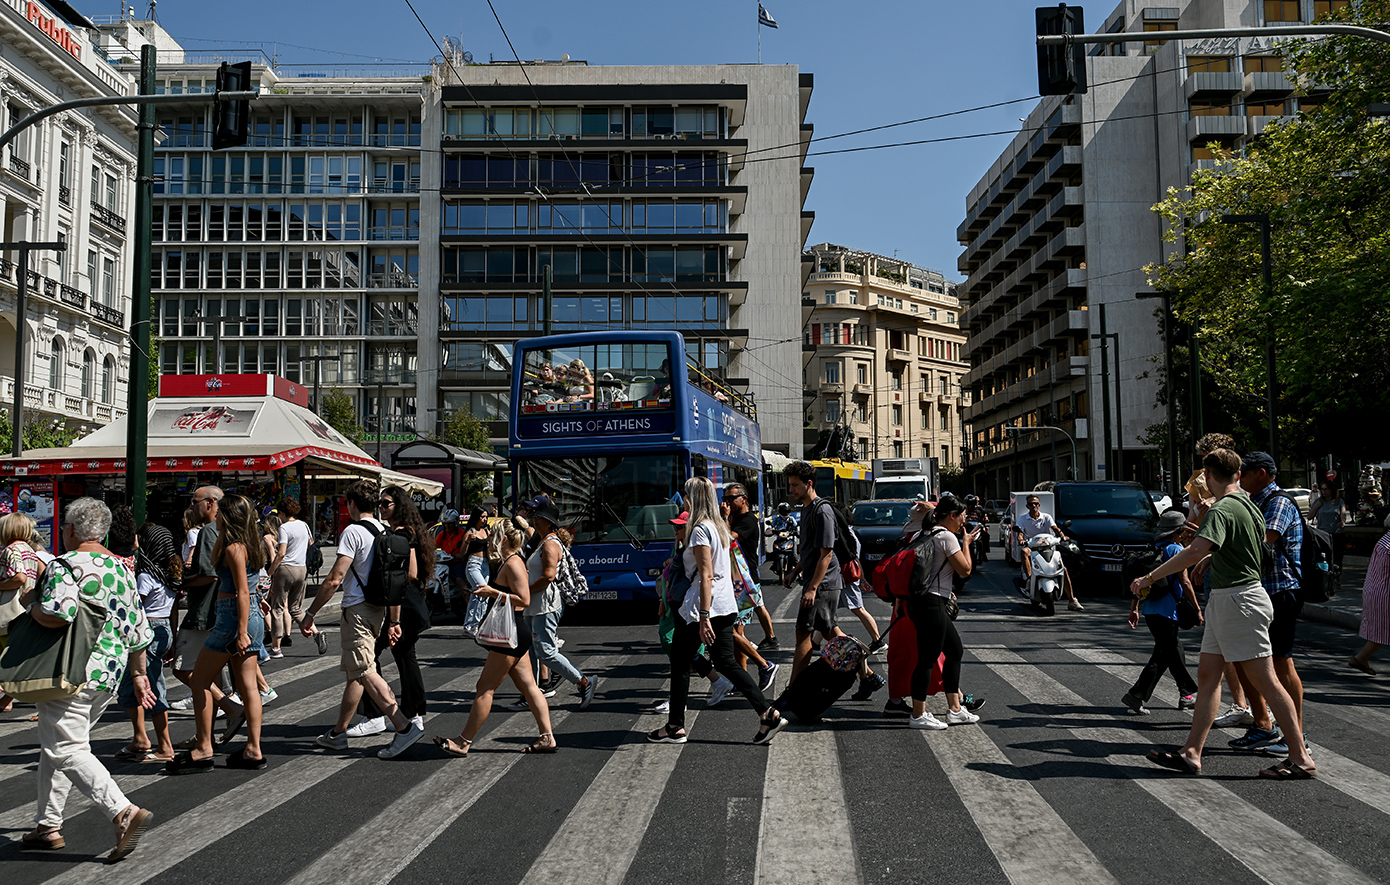 Οι νέες χώρες που μπαίνουν στον τουριστικό χάρτη της Ελλάδας, οι παραδοσιακοί πελάτες και η «απειλή»